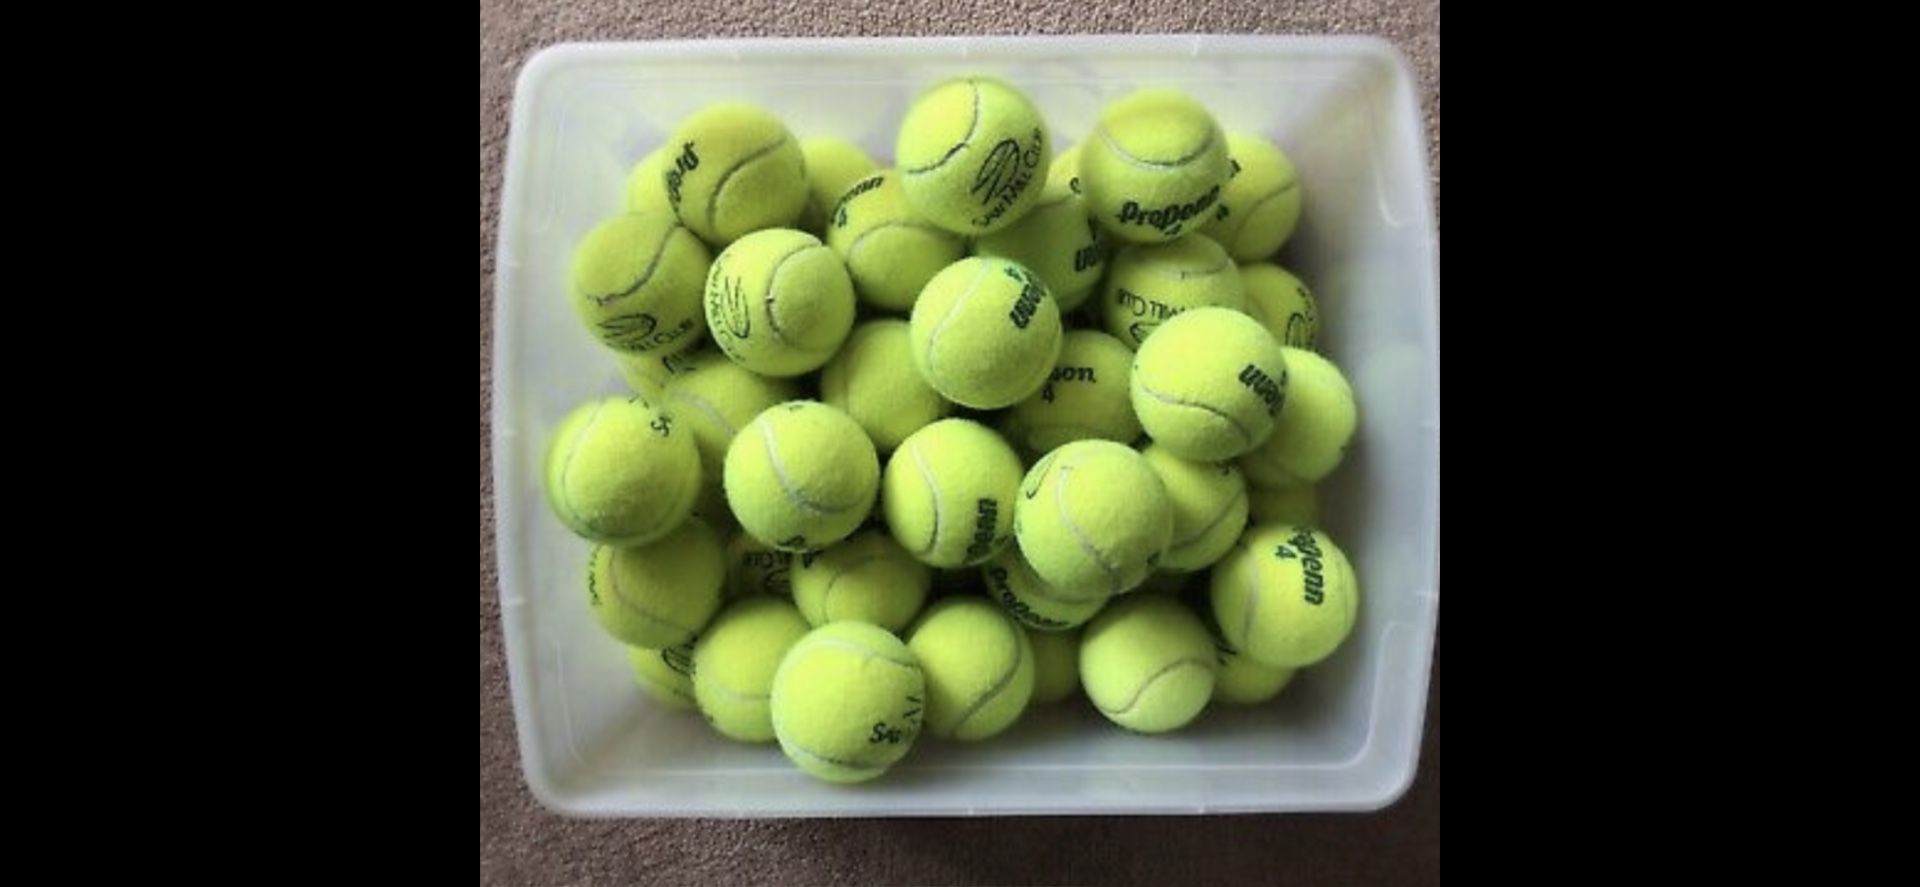 🎾🎾🎾 Tennis Balls 🎾🎾🎾